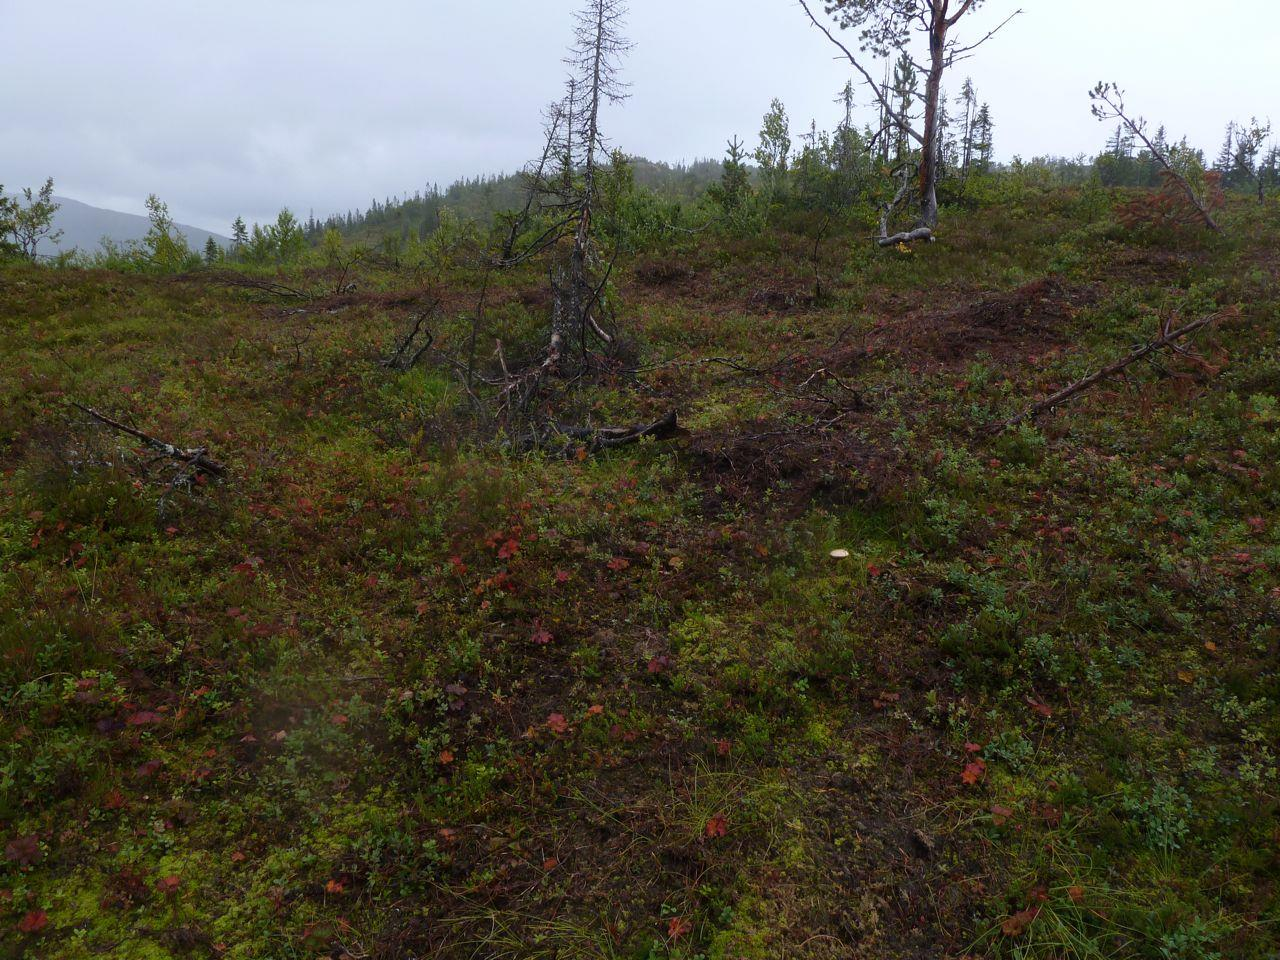 PLANBESKRIVELSE MED KONSEKVENSUTREDNING 37 (59) Figur 21 Noe mer glissen, men samtidig litt mer lauvrik skog i den nordøstre delen av utredningsområdet.